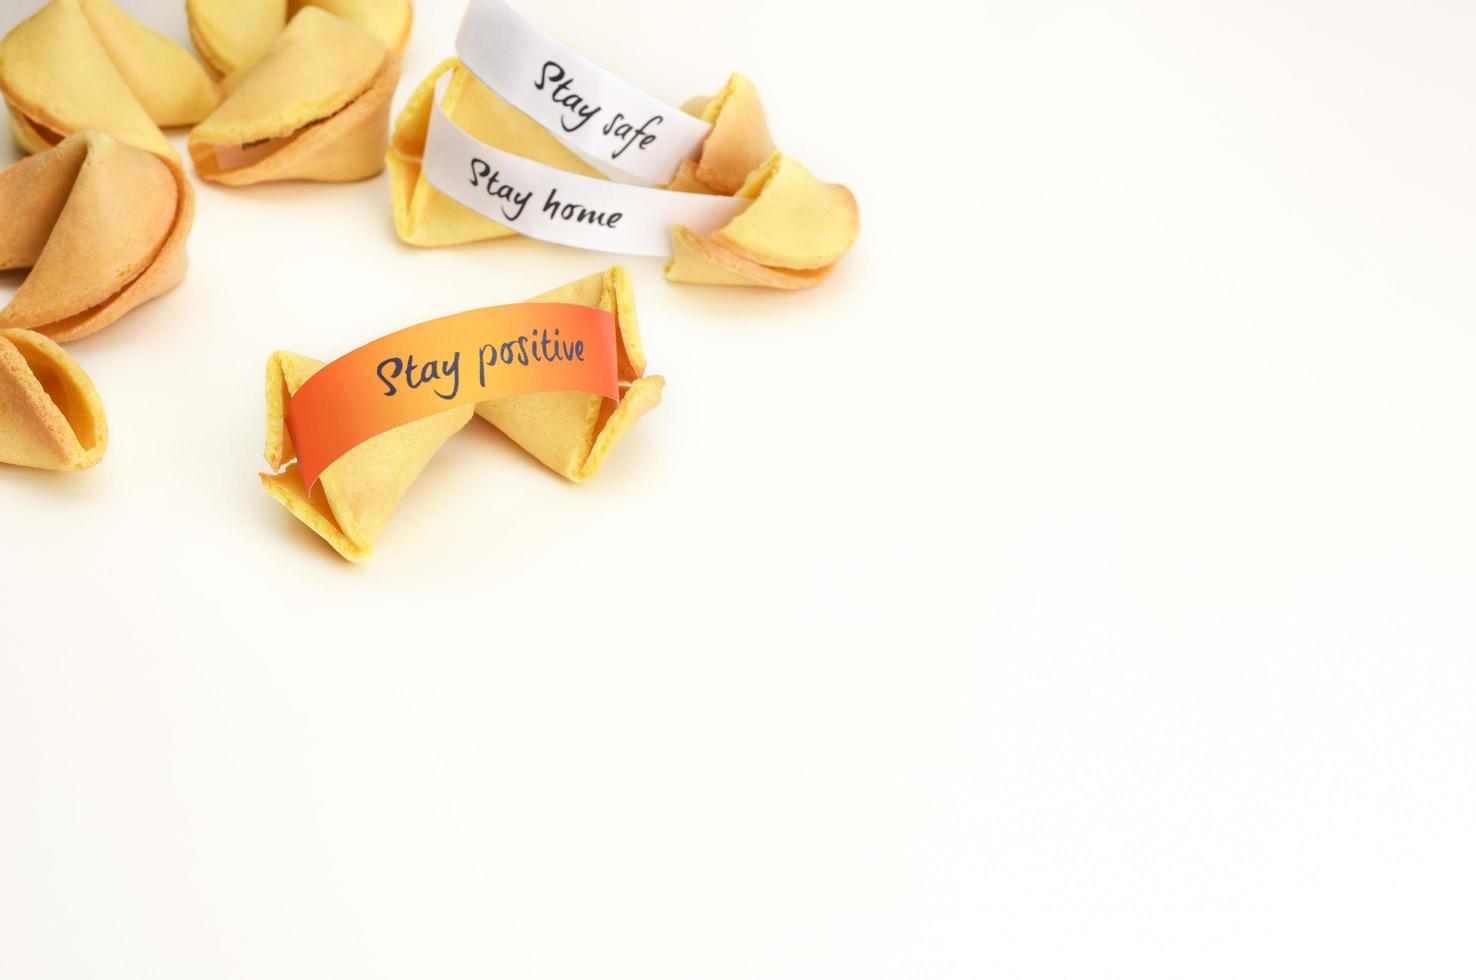 una galleta de la fortuna con un deseo positivo en papel naranja. foto